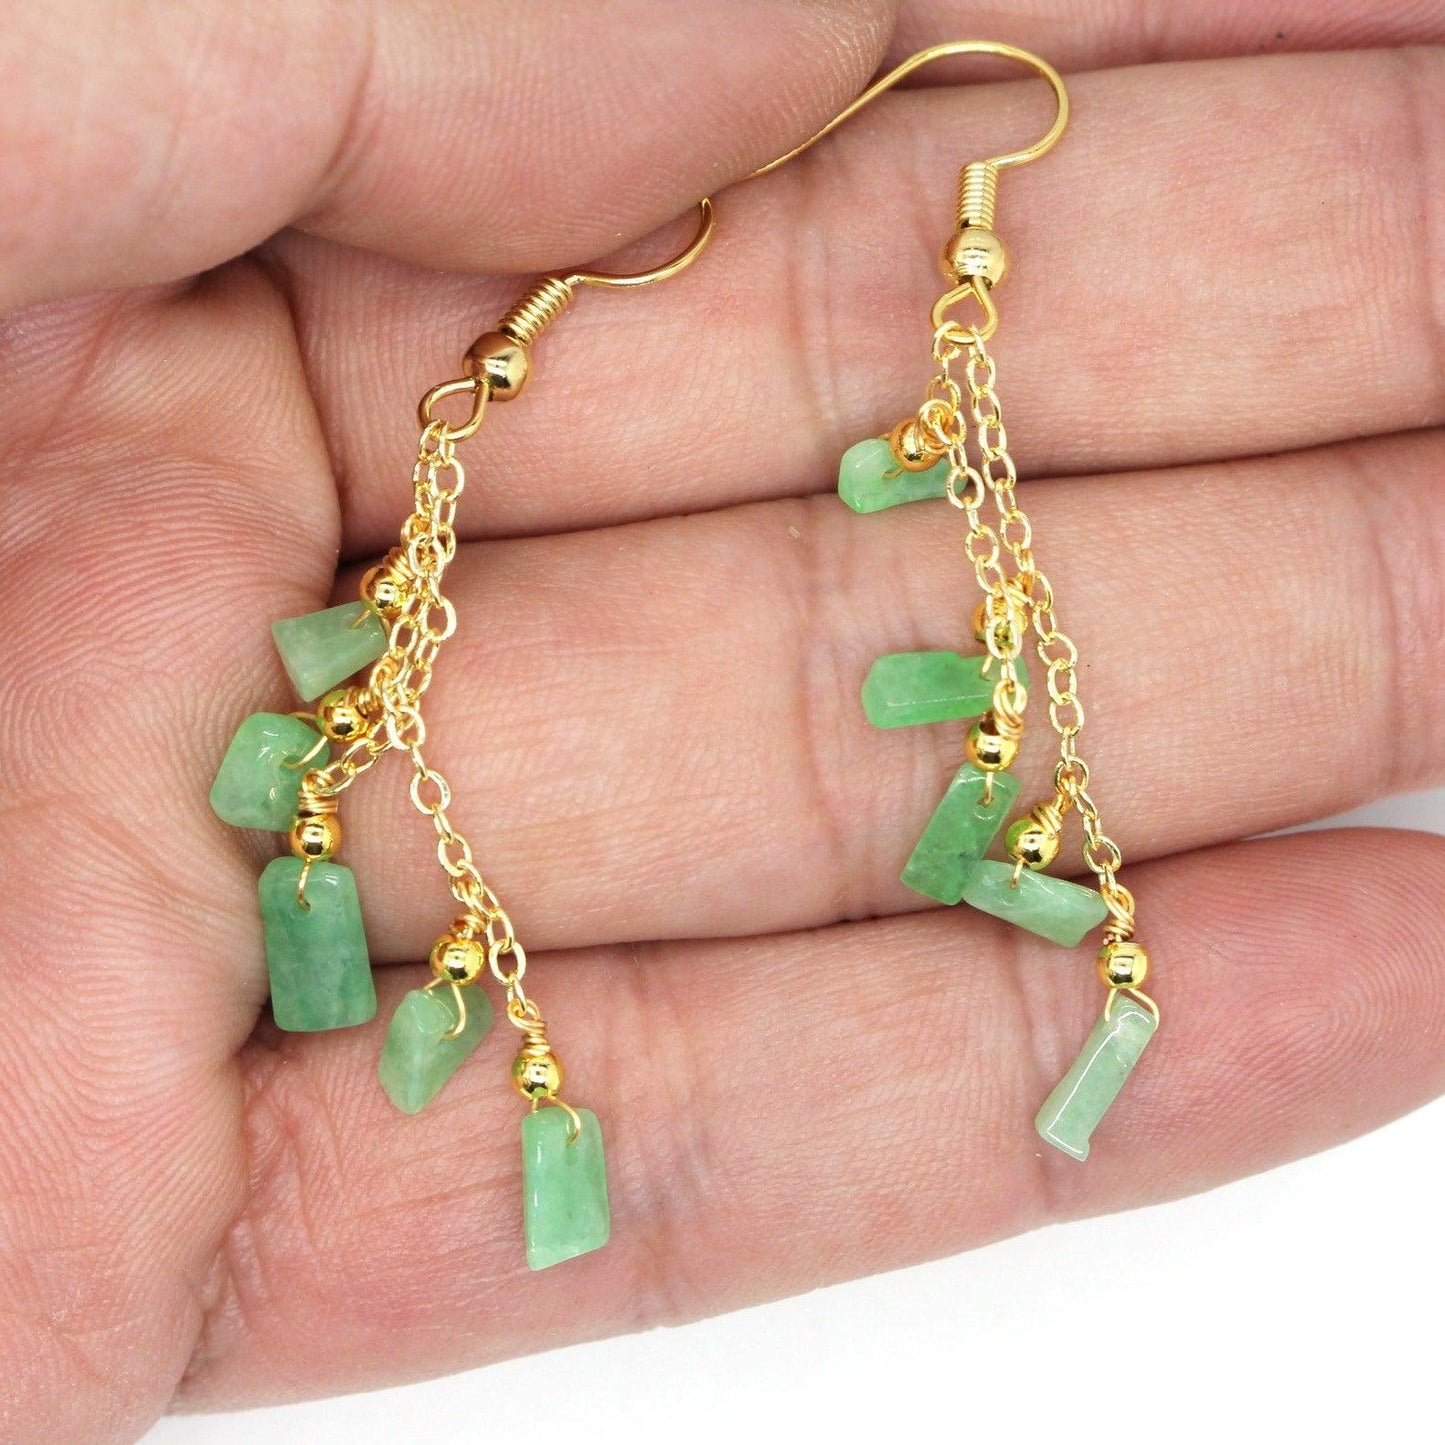 Type A Jadeite Jade Earrings